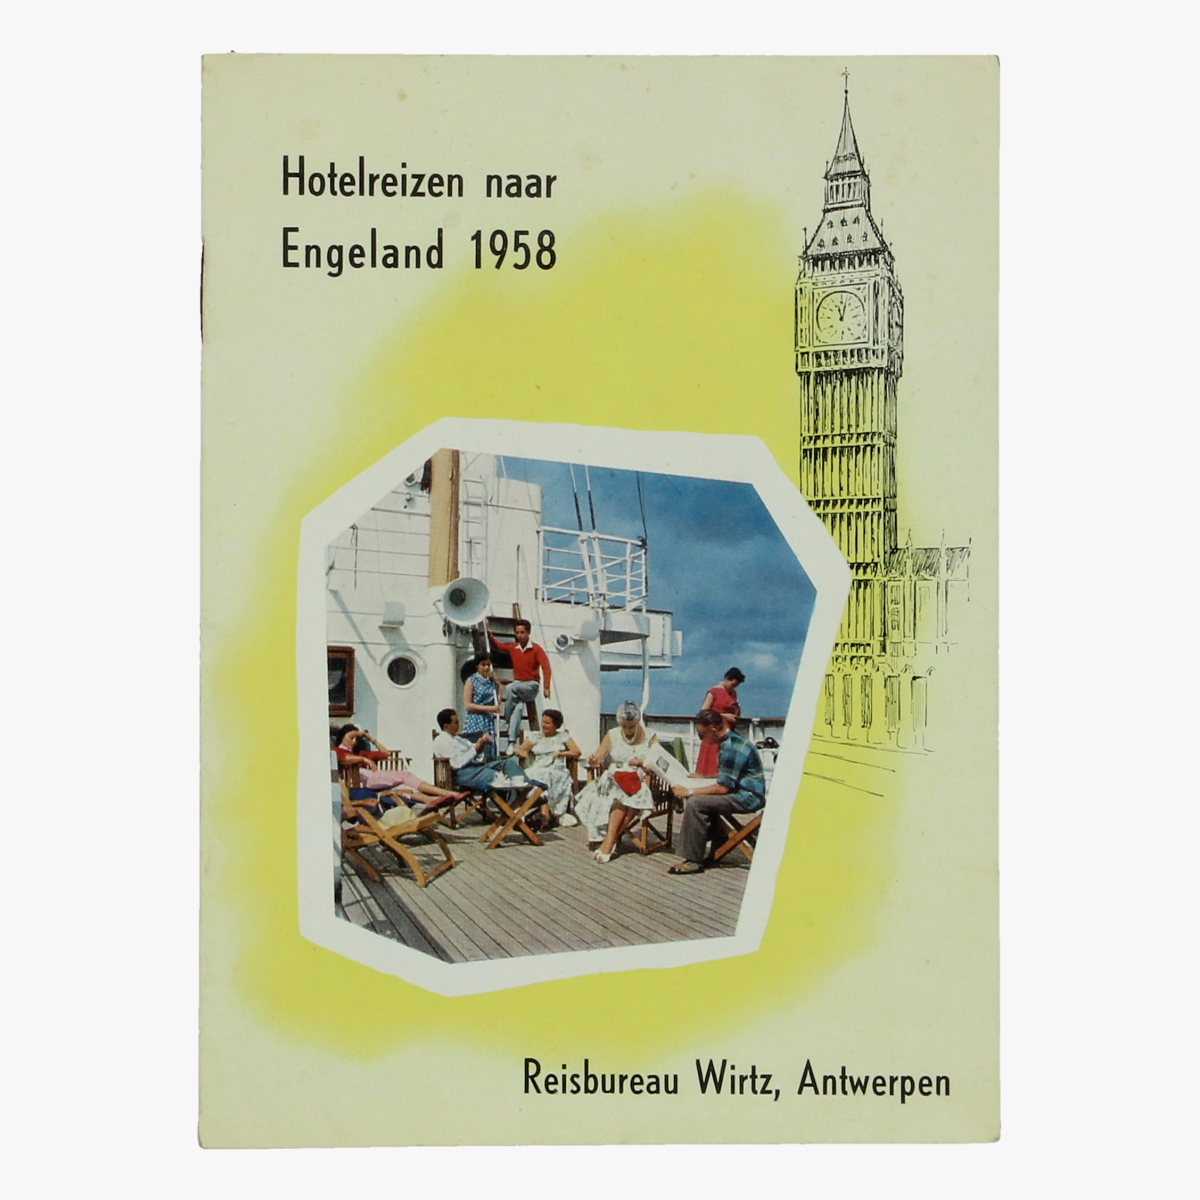 Afbeeldingen van expo 58 folder hotelreizen naar engeland 1958, reisbureau wirtz, antwerpen